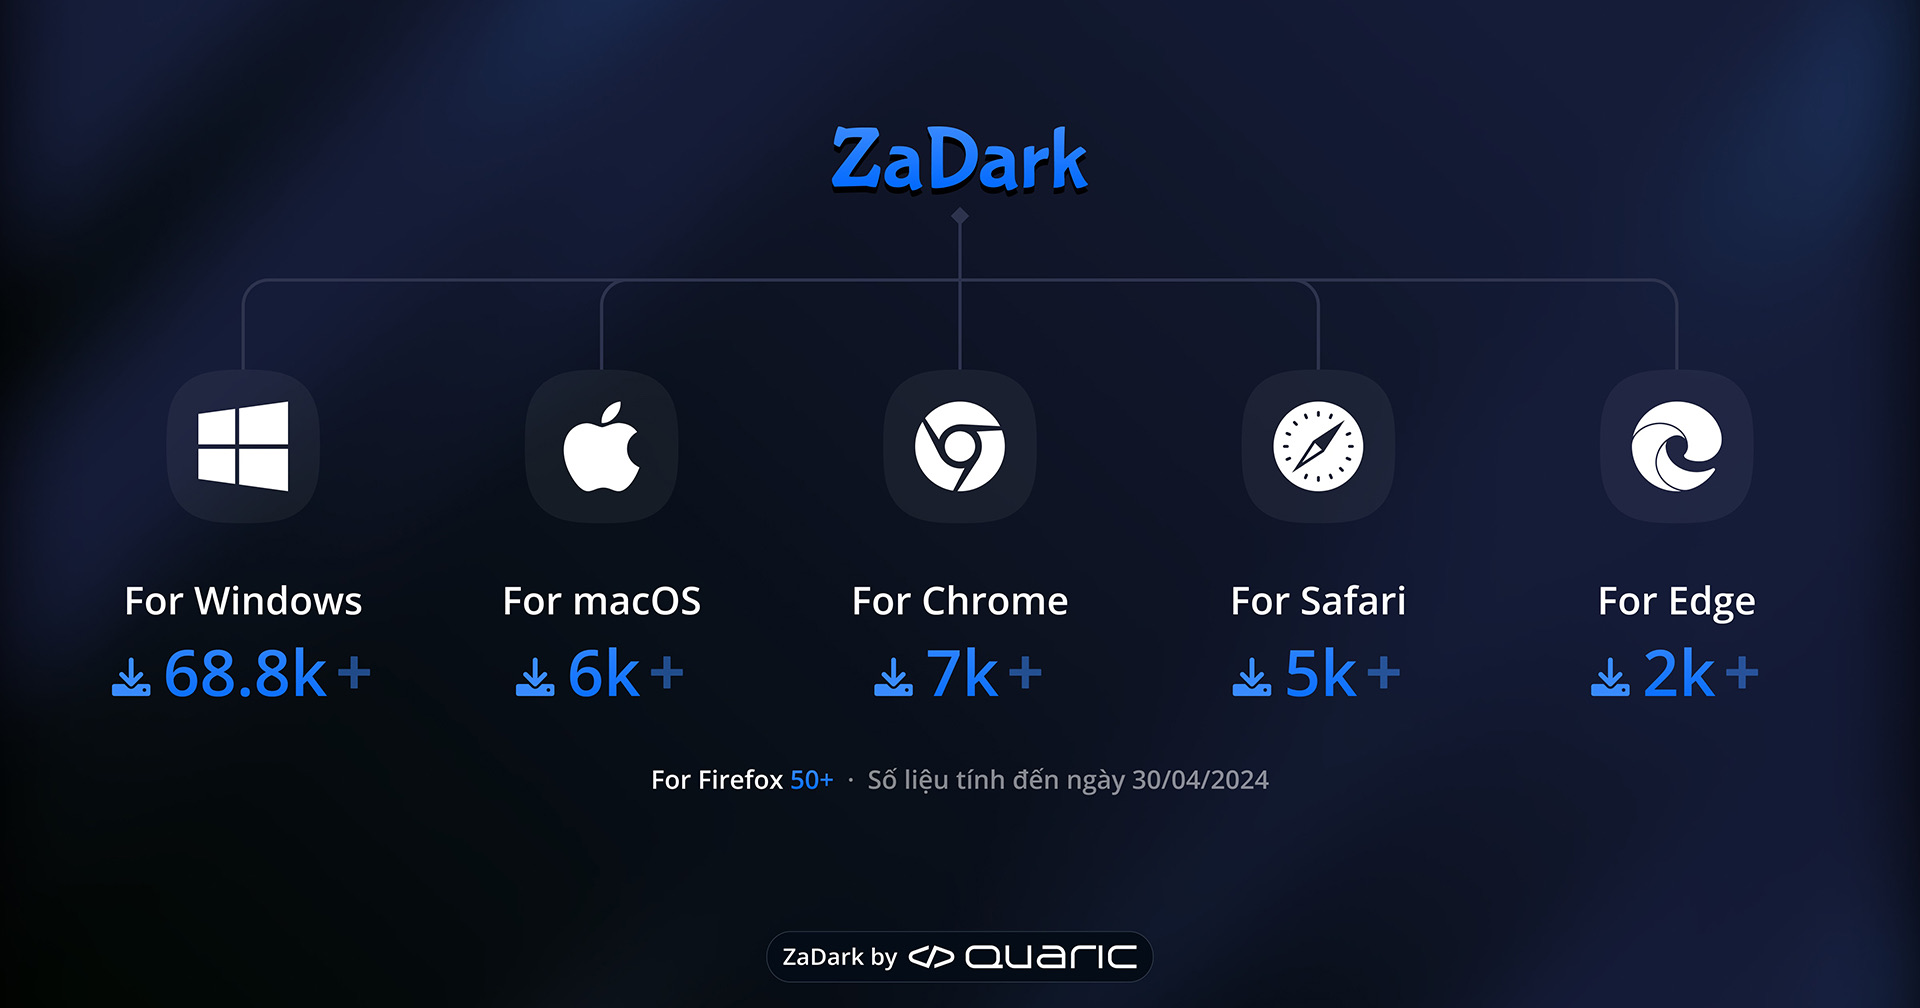 Thống kê lượt tải xuống ZaDark trên các nền tảng Windows, macOS, Chrome, Safari, Edge và Firefox